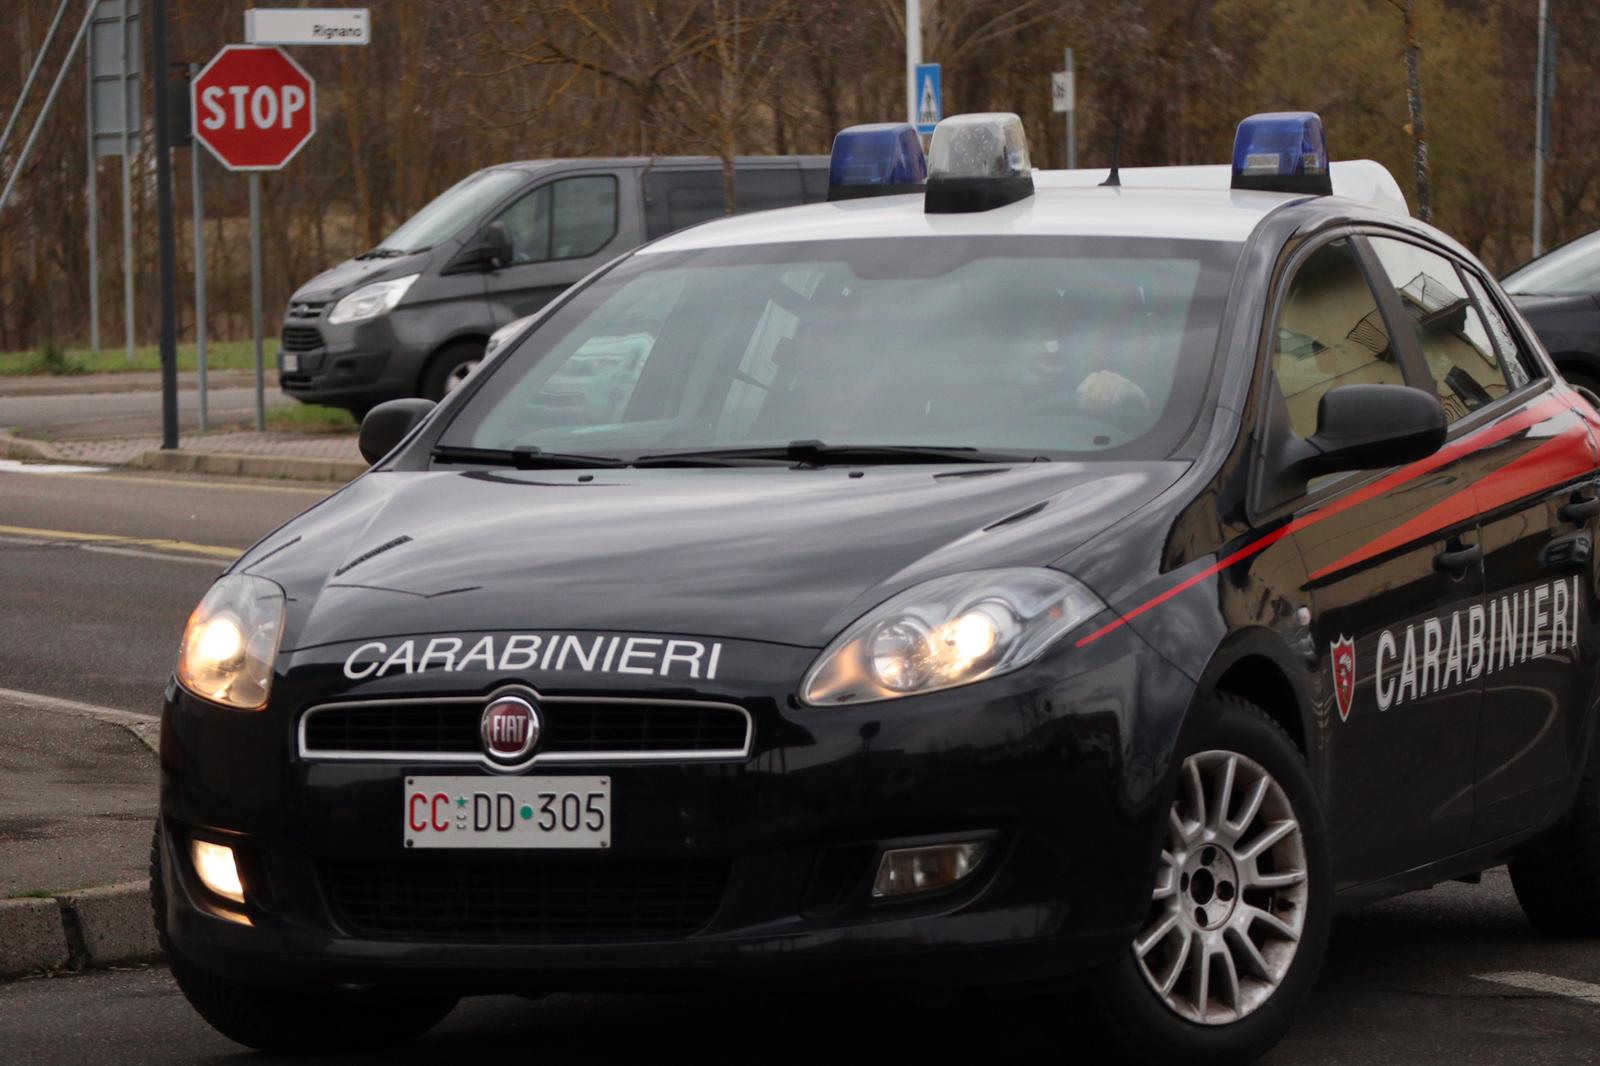 Battuta d’arresto allo spaccio in città. I Carabinieri arrestano due pusher albanesi